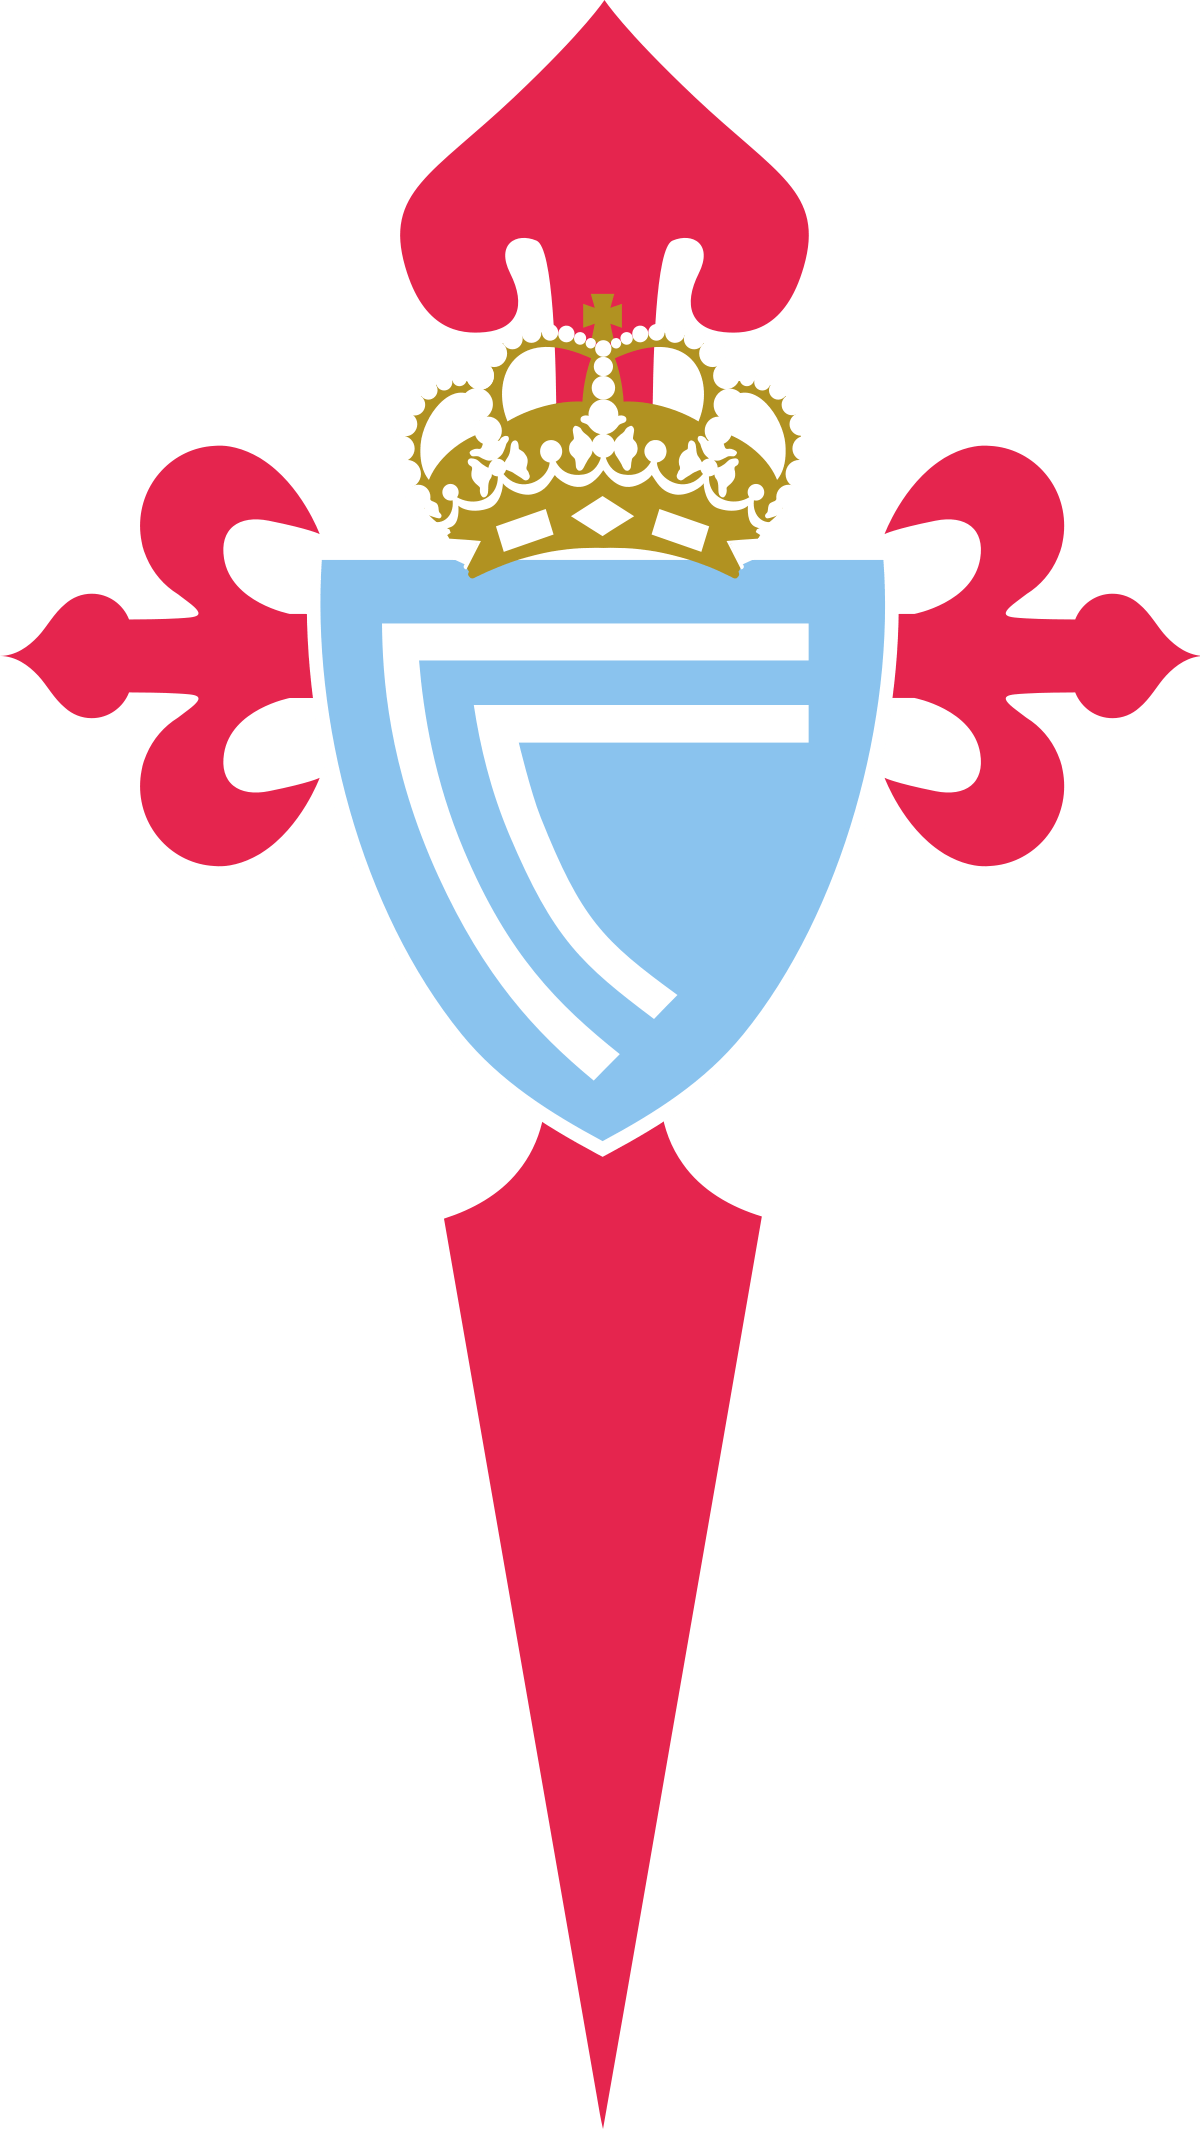 Equipo premiado con dos entradas para asistir en directo y de forma gratuita al encuentro de Fútbol de Primera División entre Deportivo Alavés y Celta de Vigo.